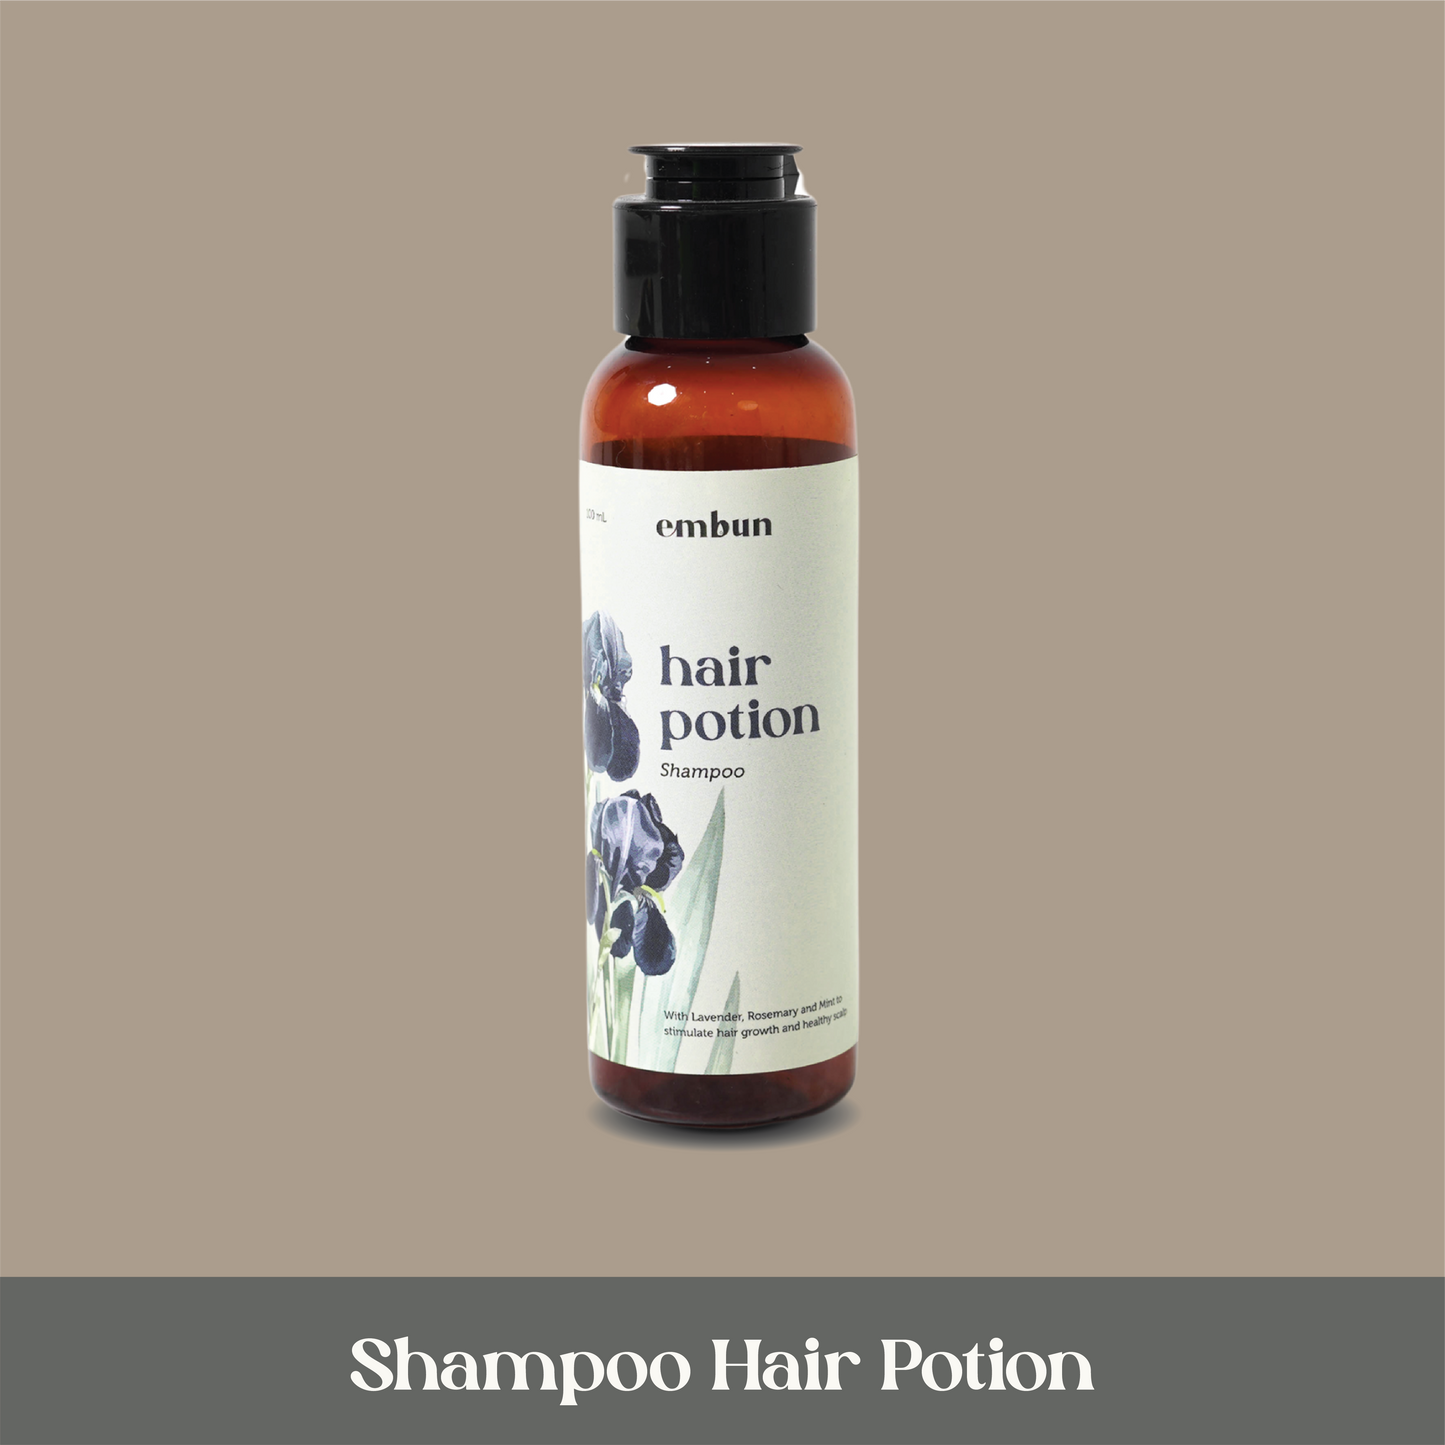 Shampoo Hair Potion